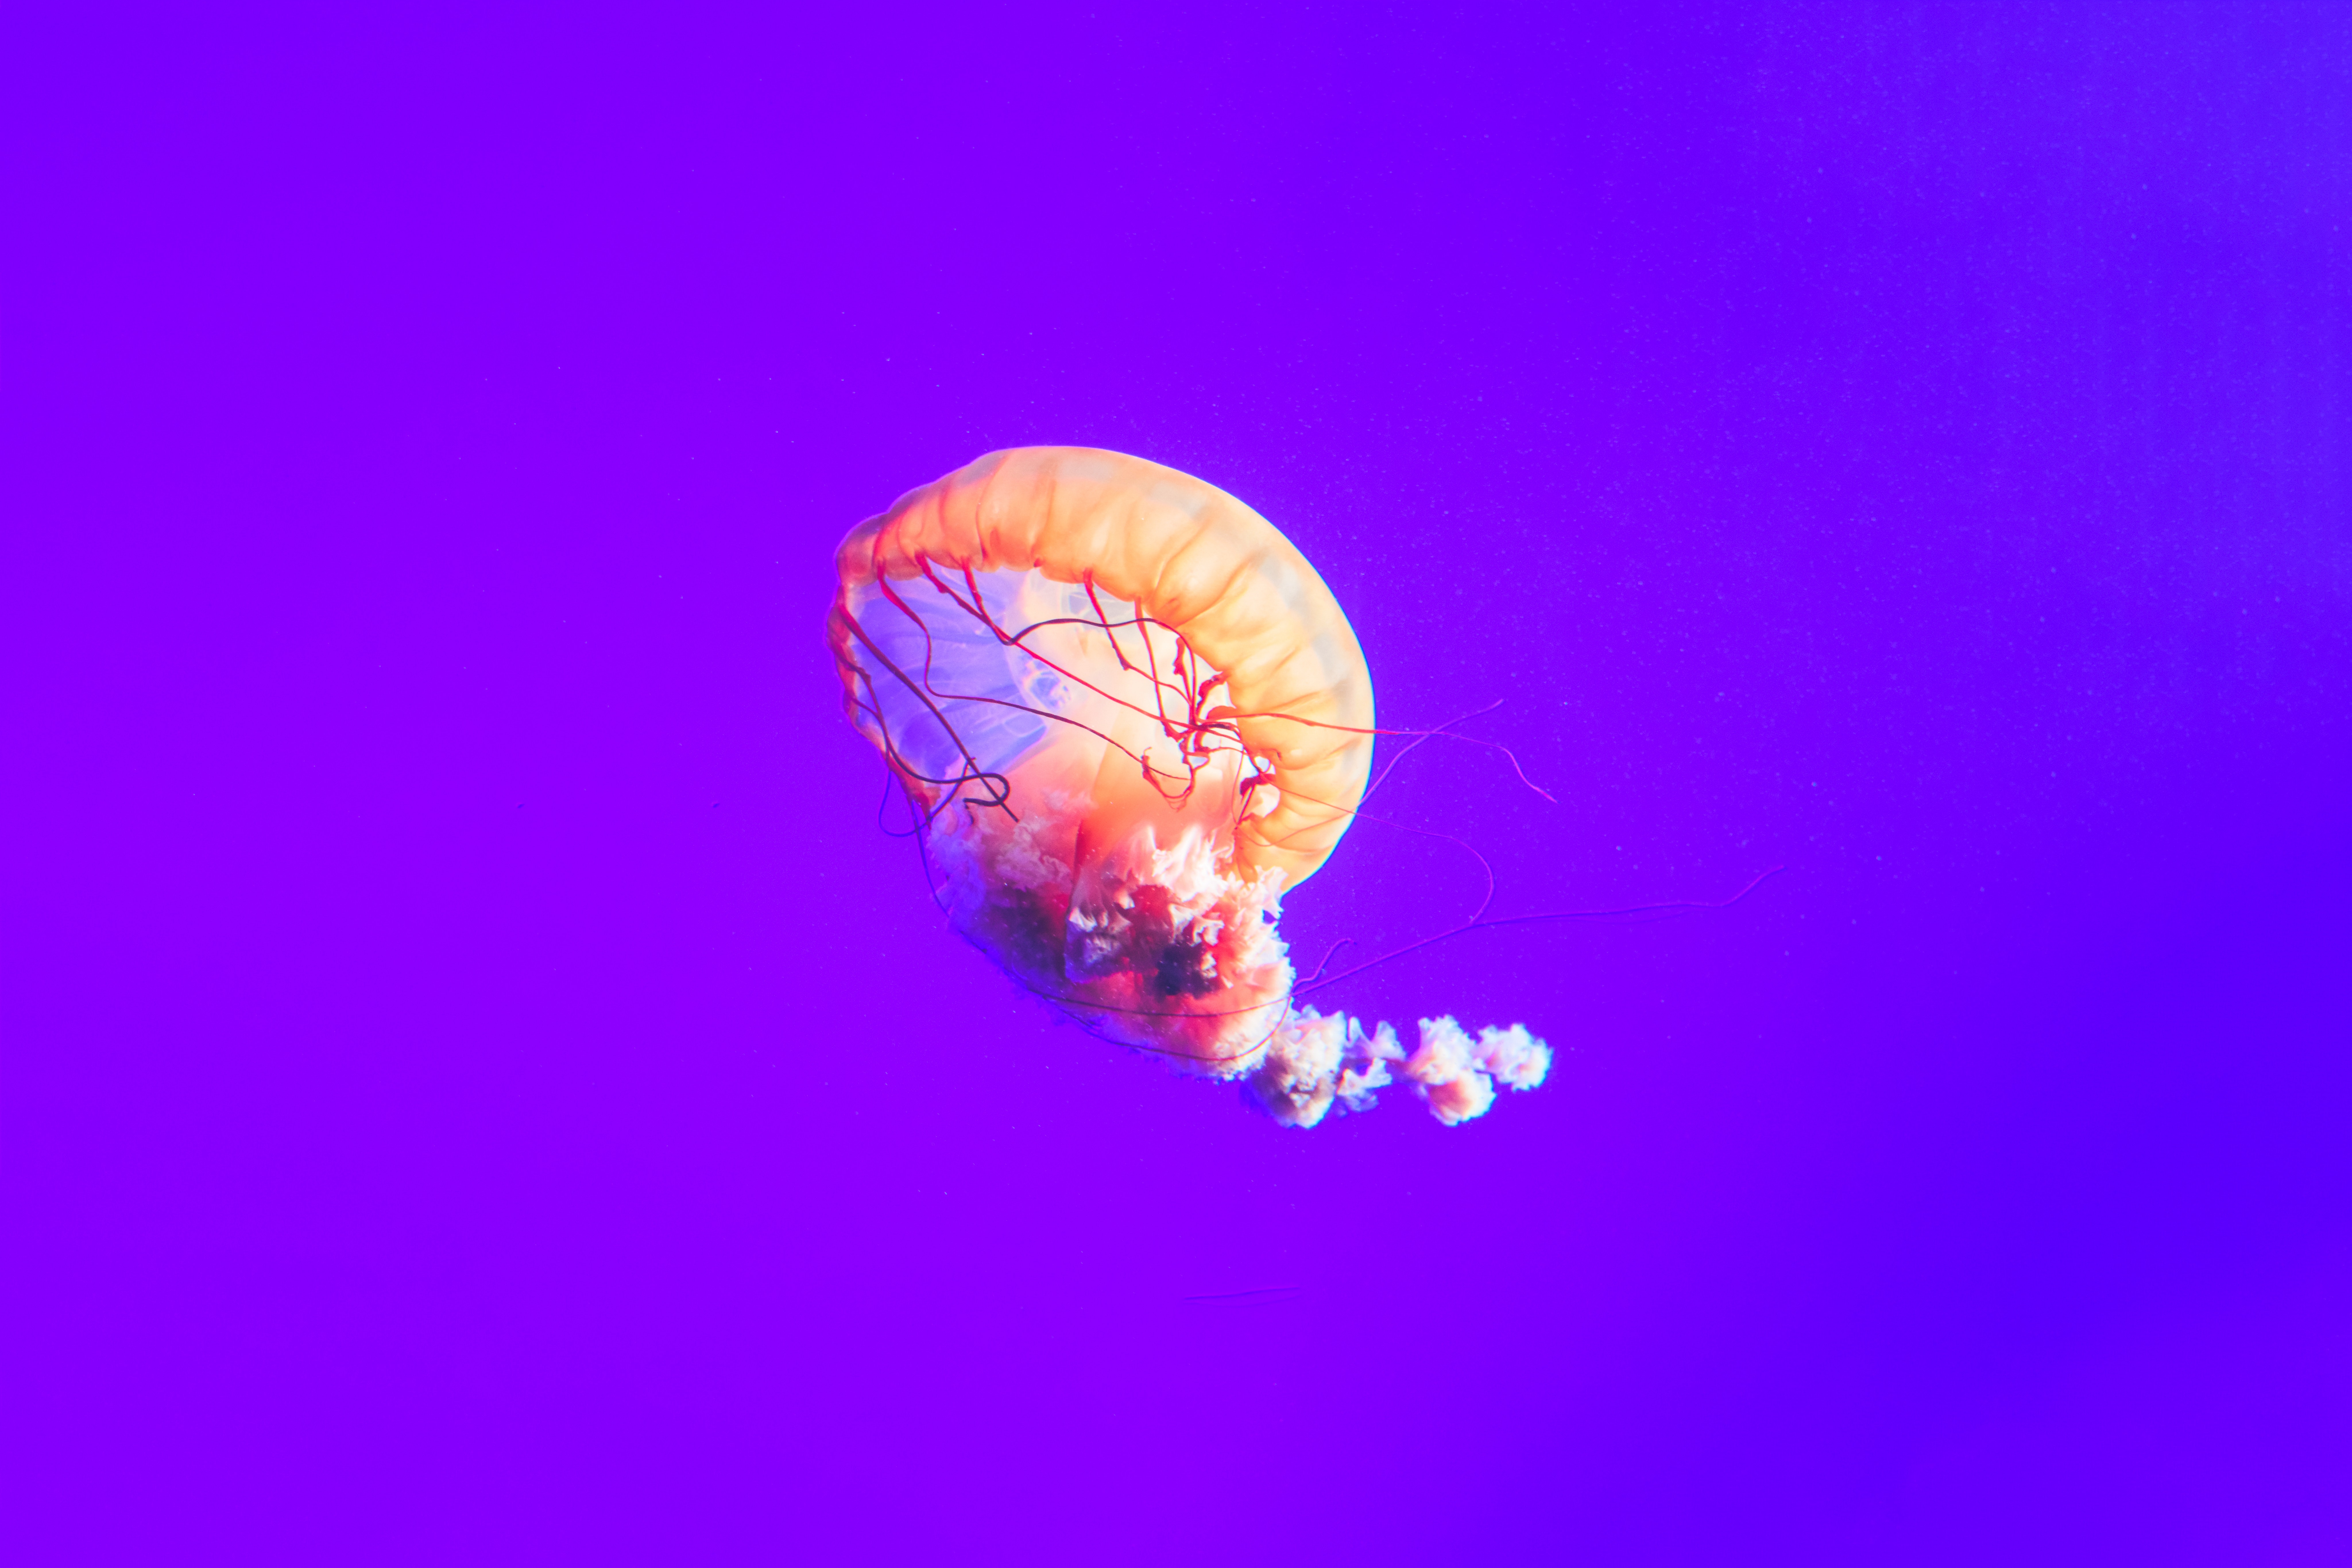 General 8192x5461 jellyfish underwater minimalism purple purple background